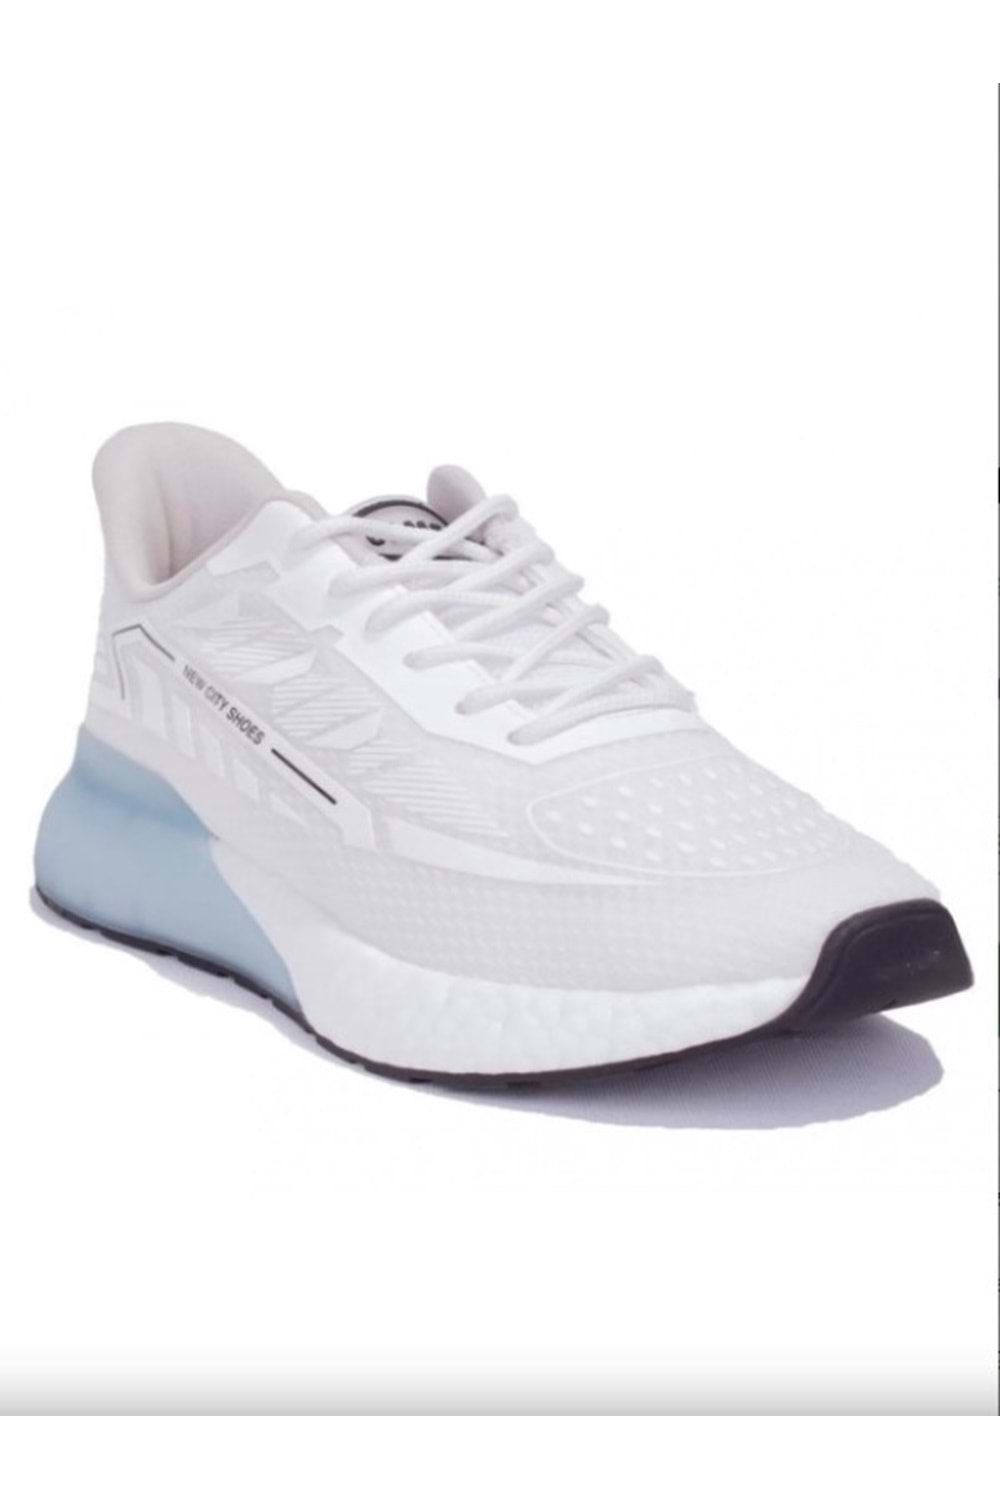 Gamelu 23Yz Nice Kadın Sneakers Keten Spor Ayakkabı - Beyaz - ST00169-Beyaz-38